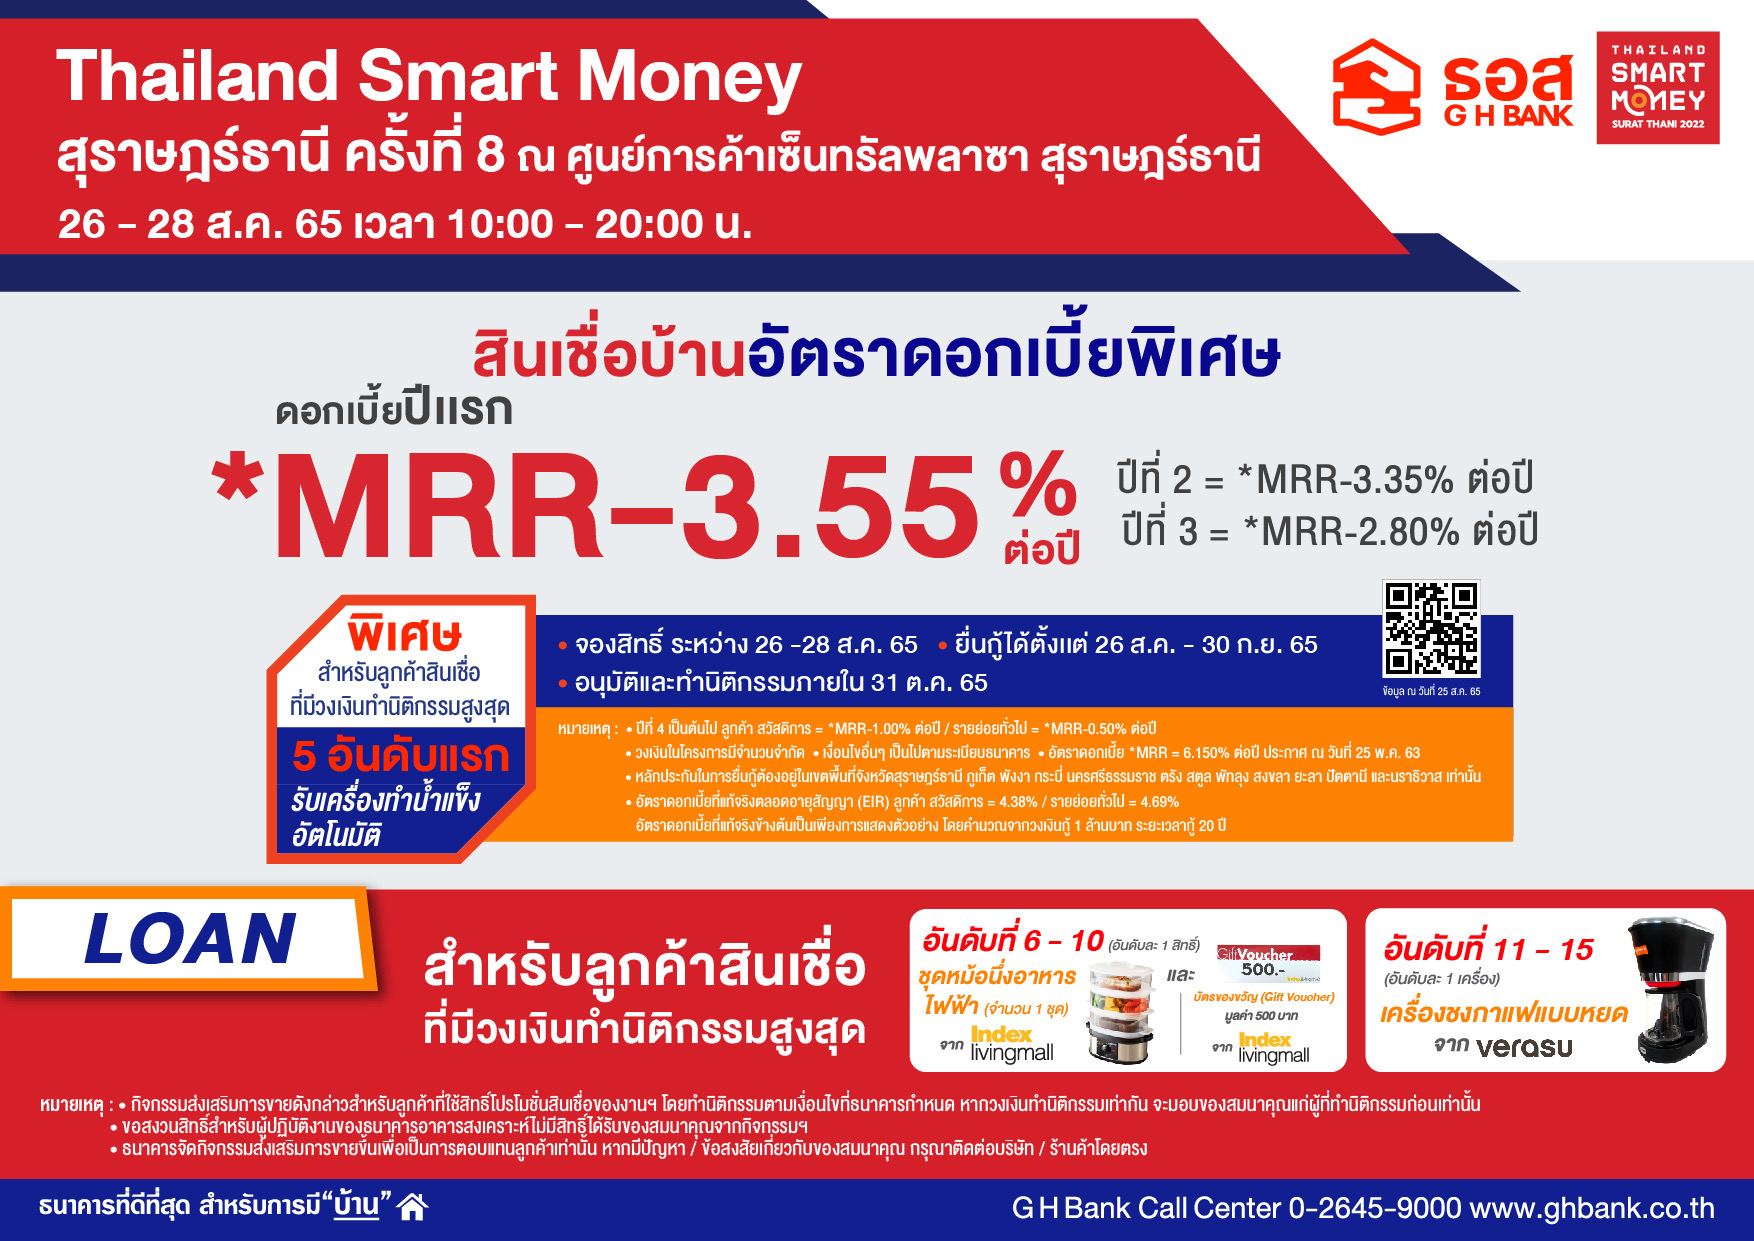 ธอส. ลงใต้คัดโปรเด็ดสินเชื่อบ้าน งาน “Thailand Smart Money สุราษฎร์ธานี ครั้งที่ 8”